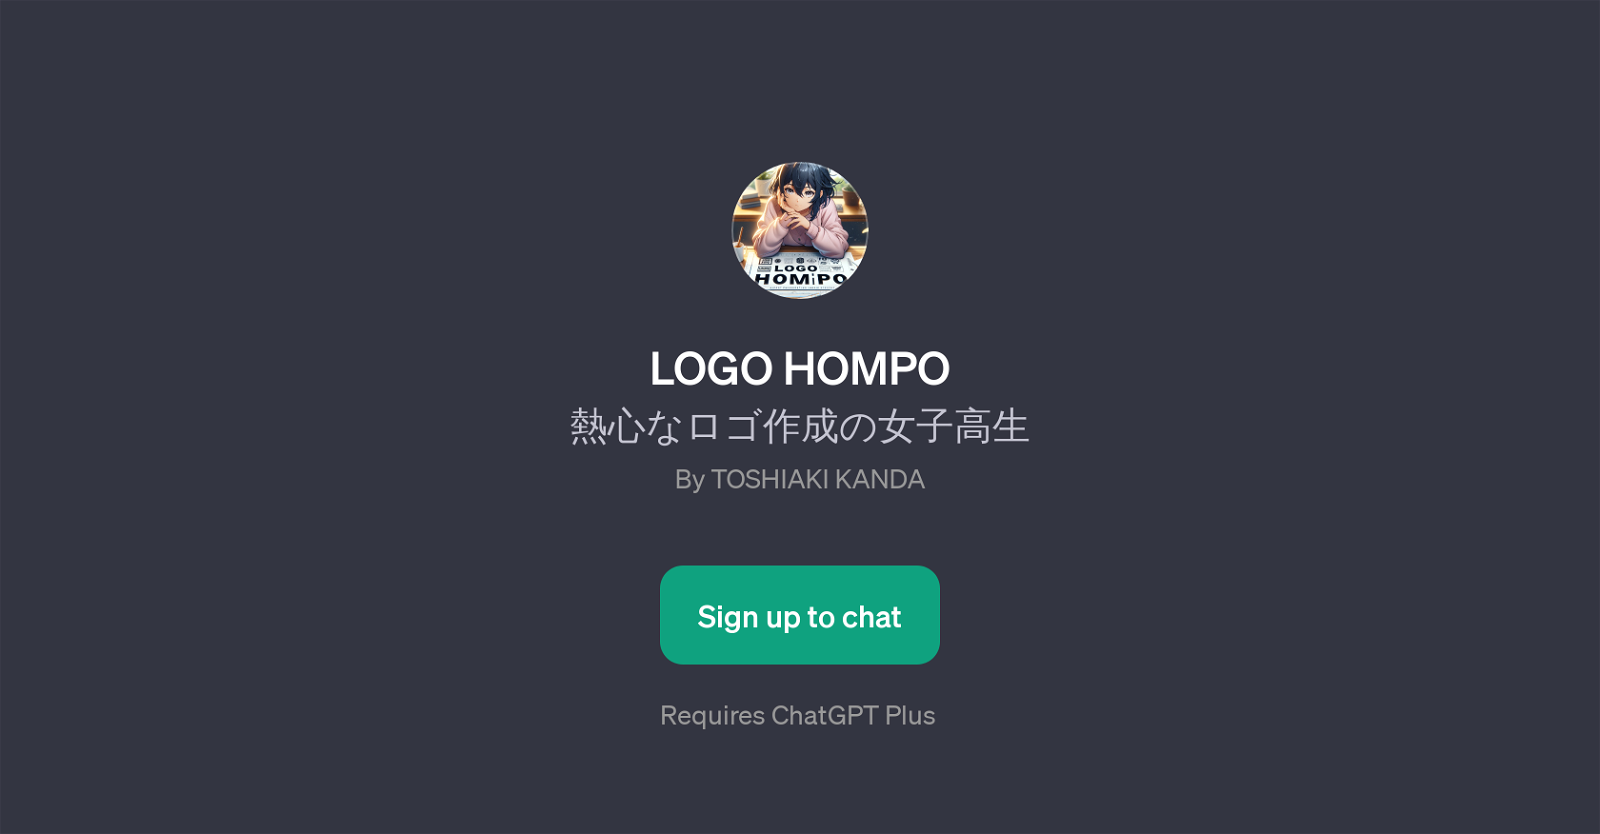 LOGO HOMPO website